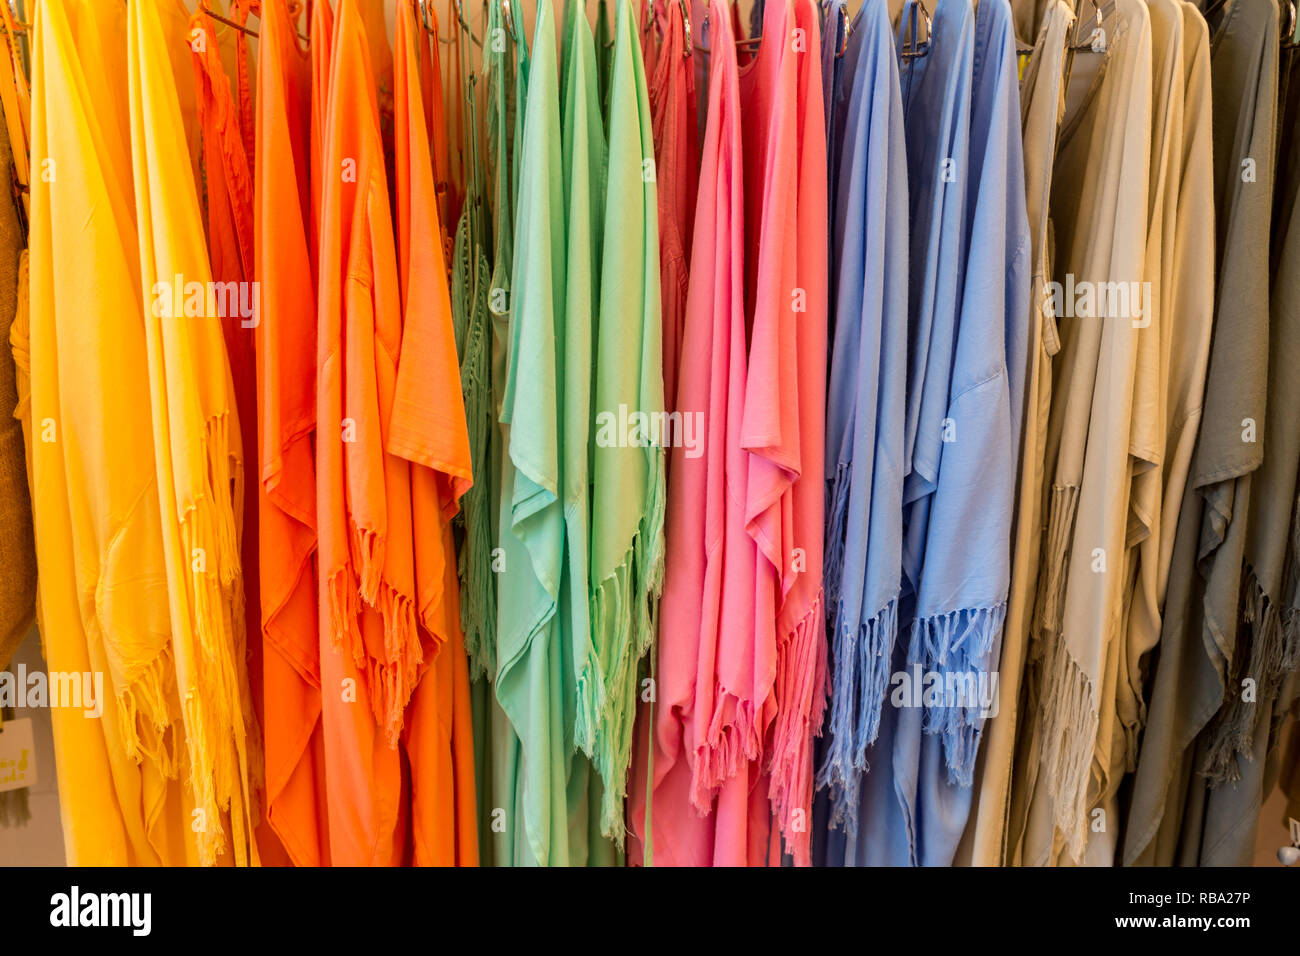 Rack Rainbow Clothes Hangers Indoors Stock Photo by ©belchonock 185291206